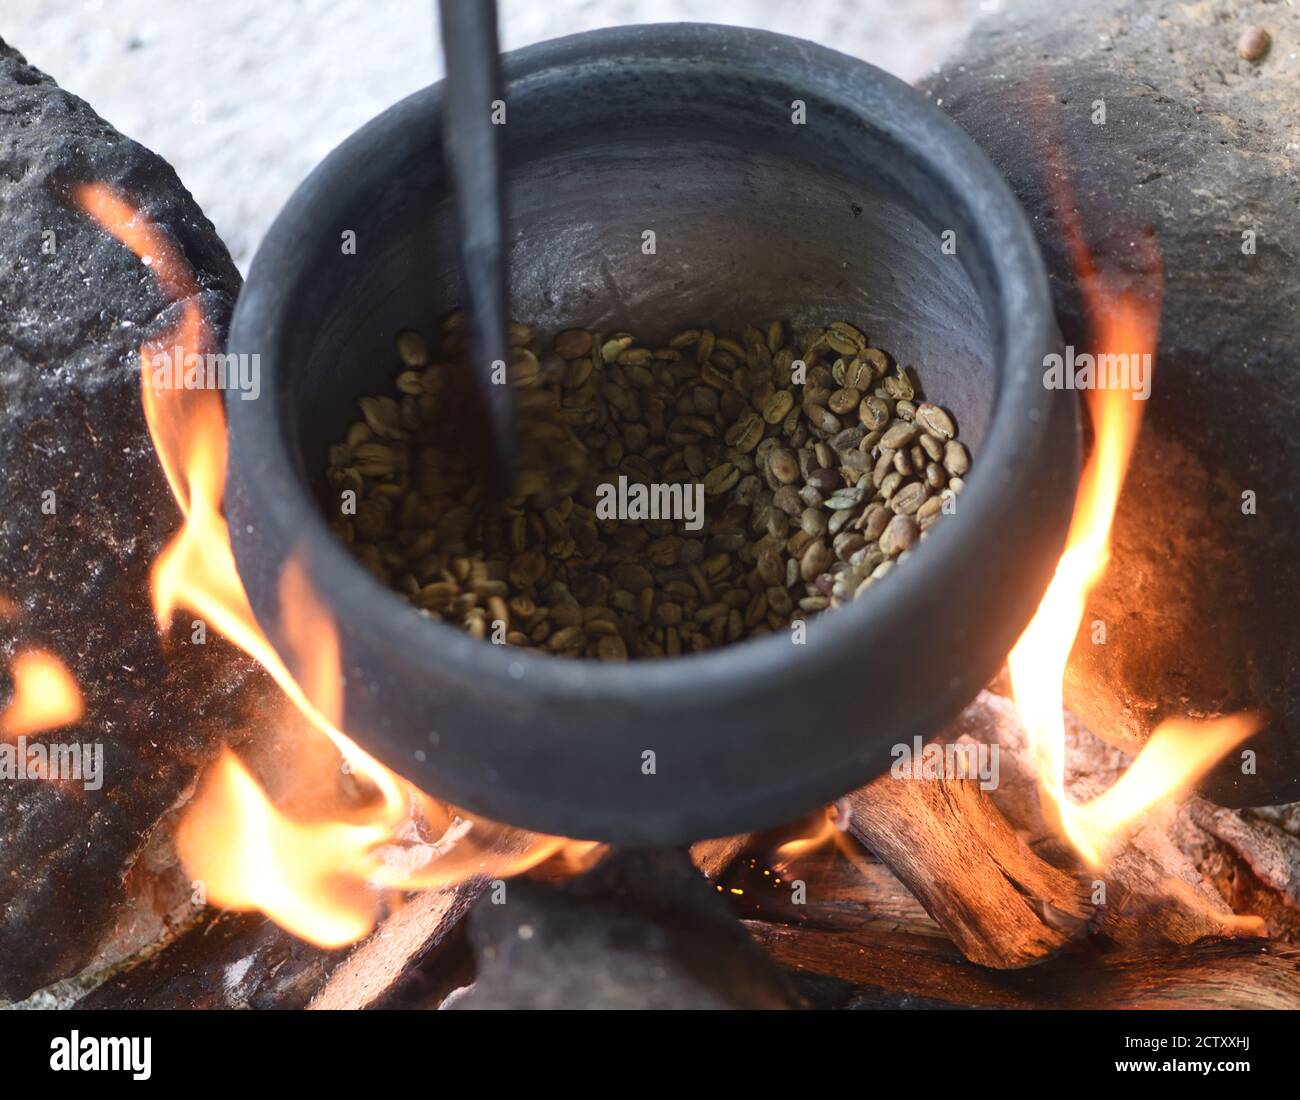 Lokal angebauter Kaffee, der über einem offenen Holzfeuer in einer schweren Eisentopf geröstet wird. Moshi, Tansania. Stockfoto